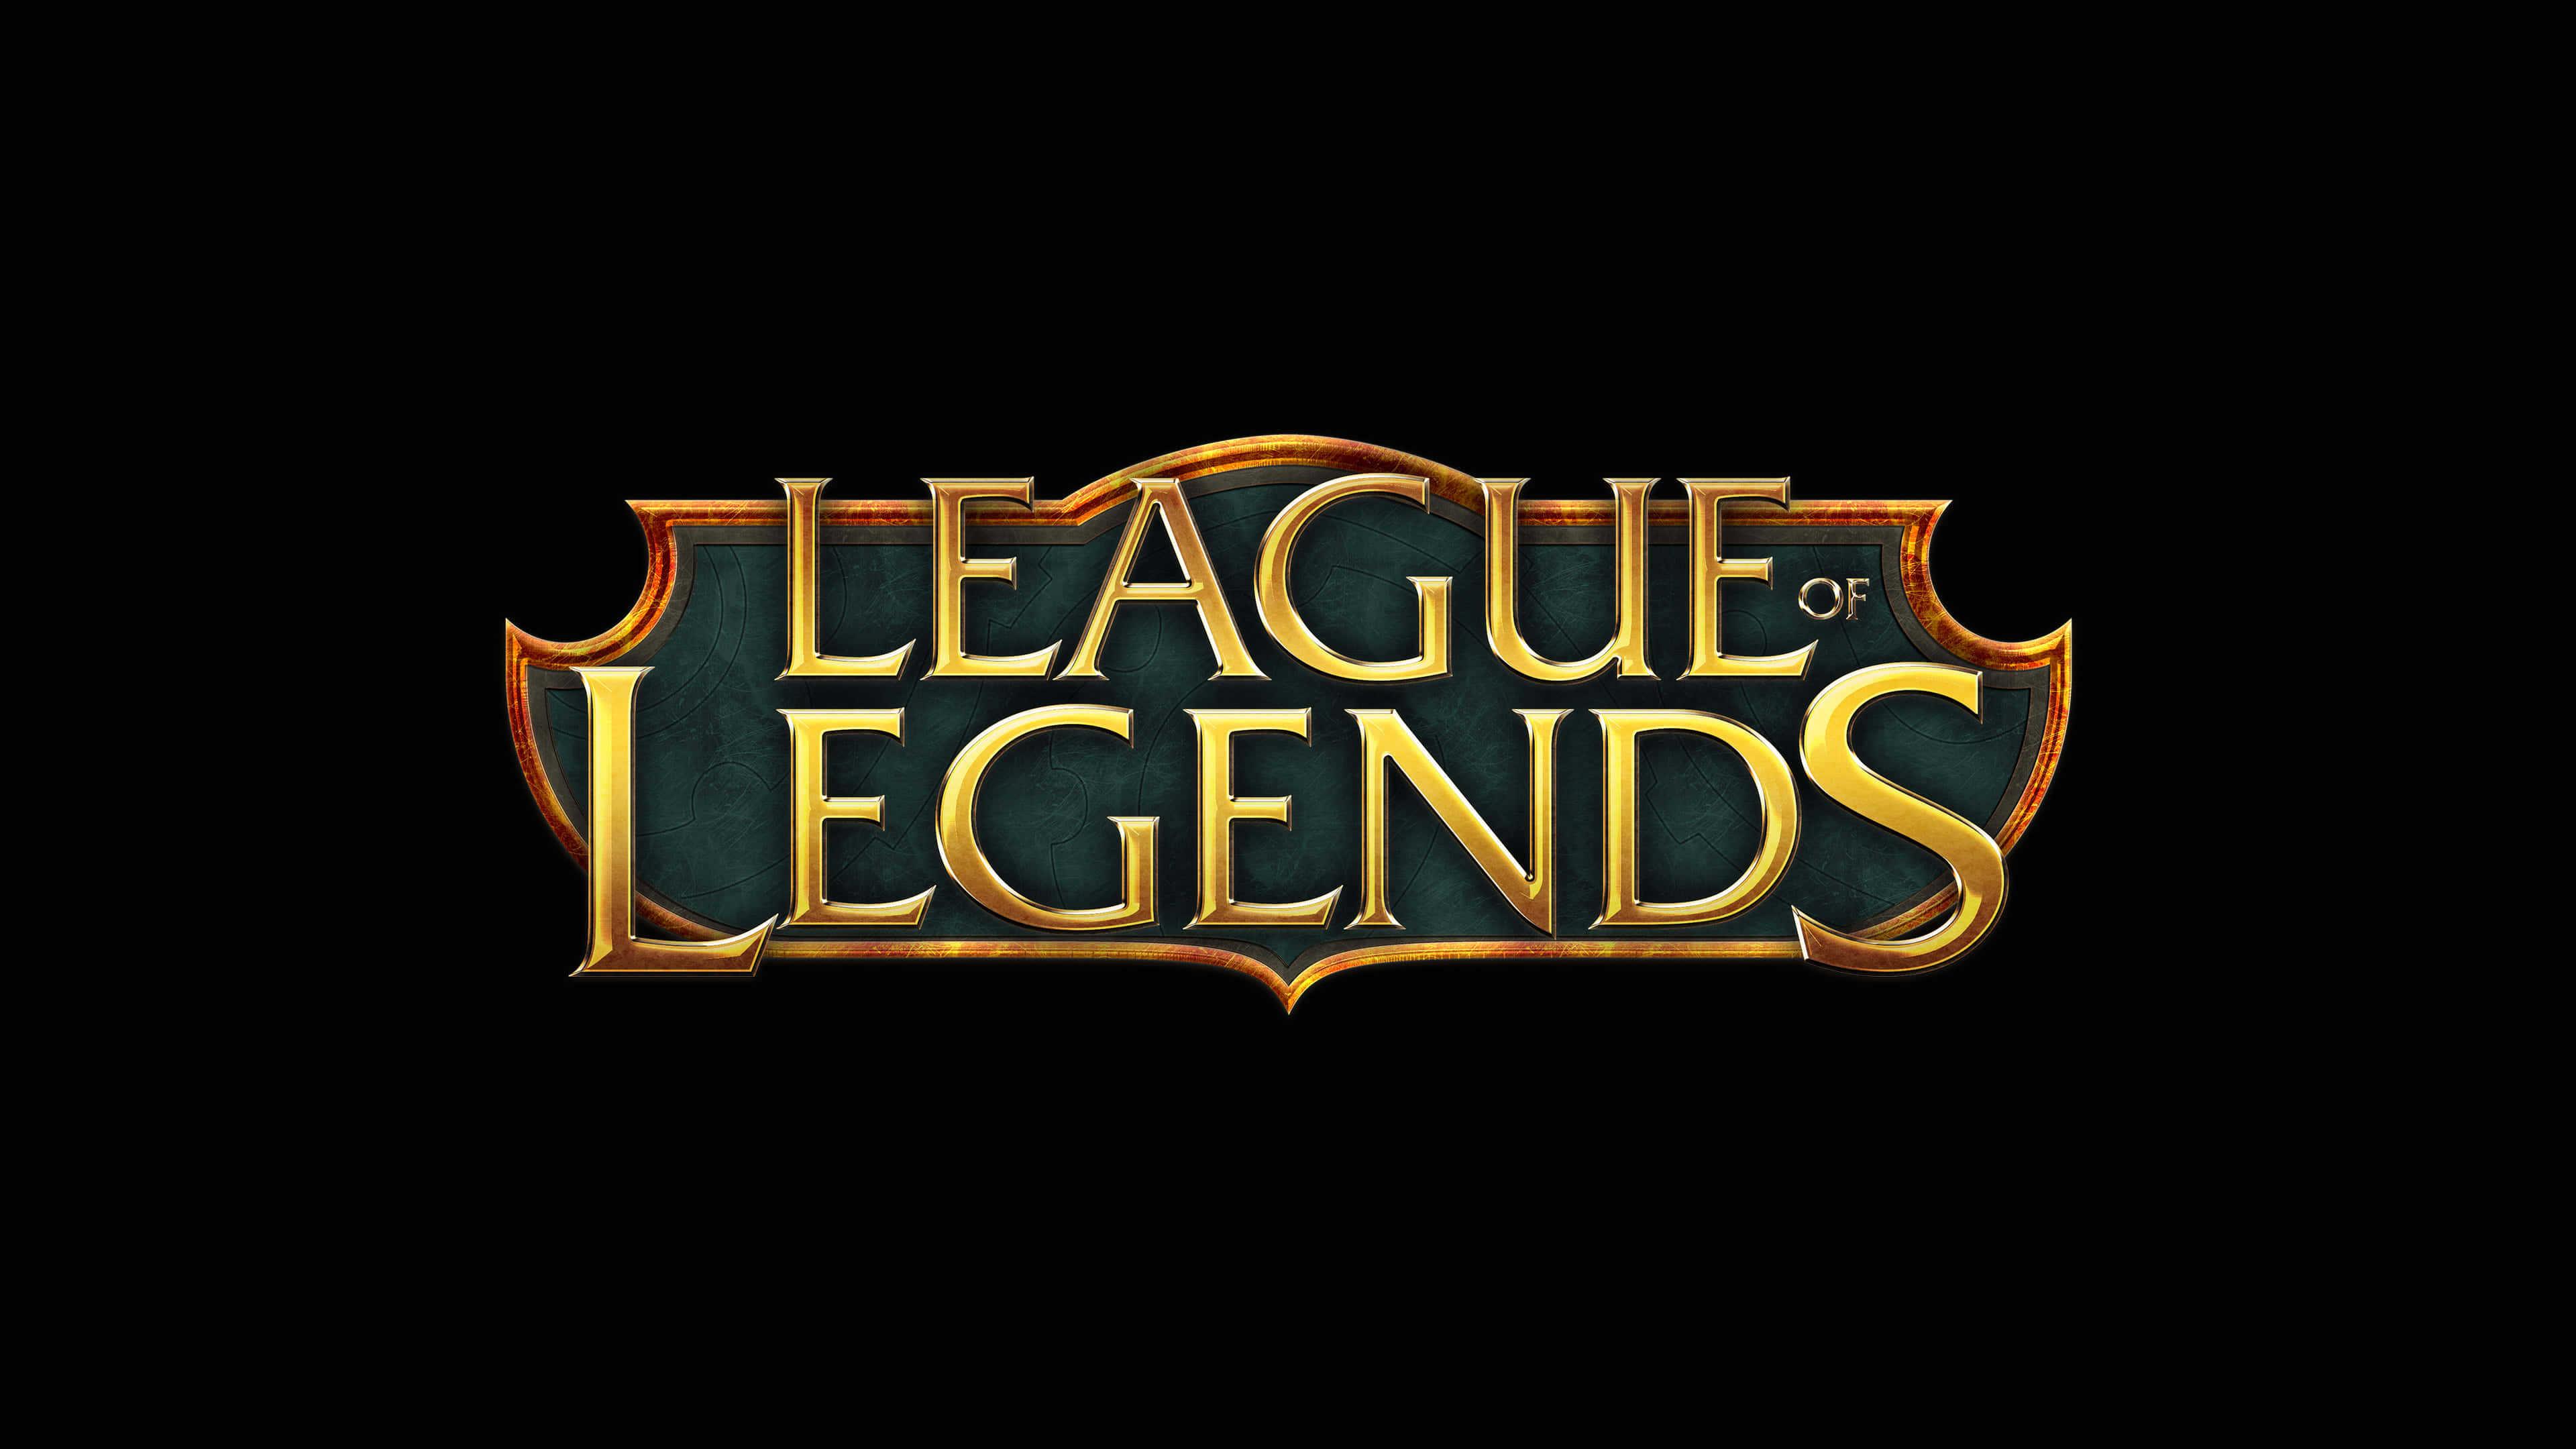 Legends Logo - League Of Legends Logo UHD 4K Wallpaper